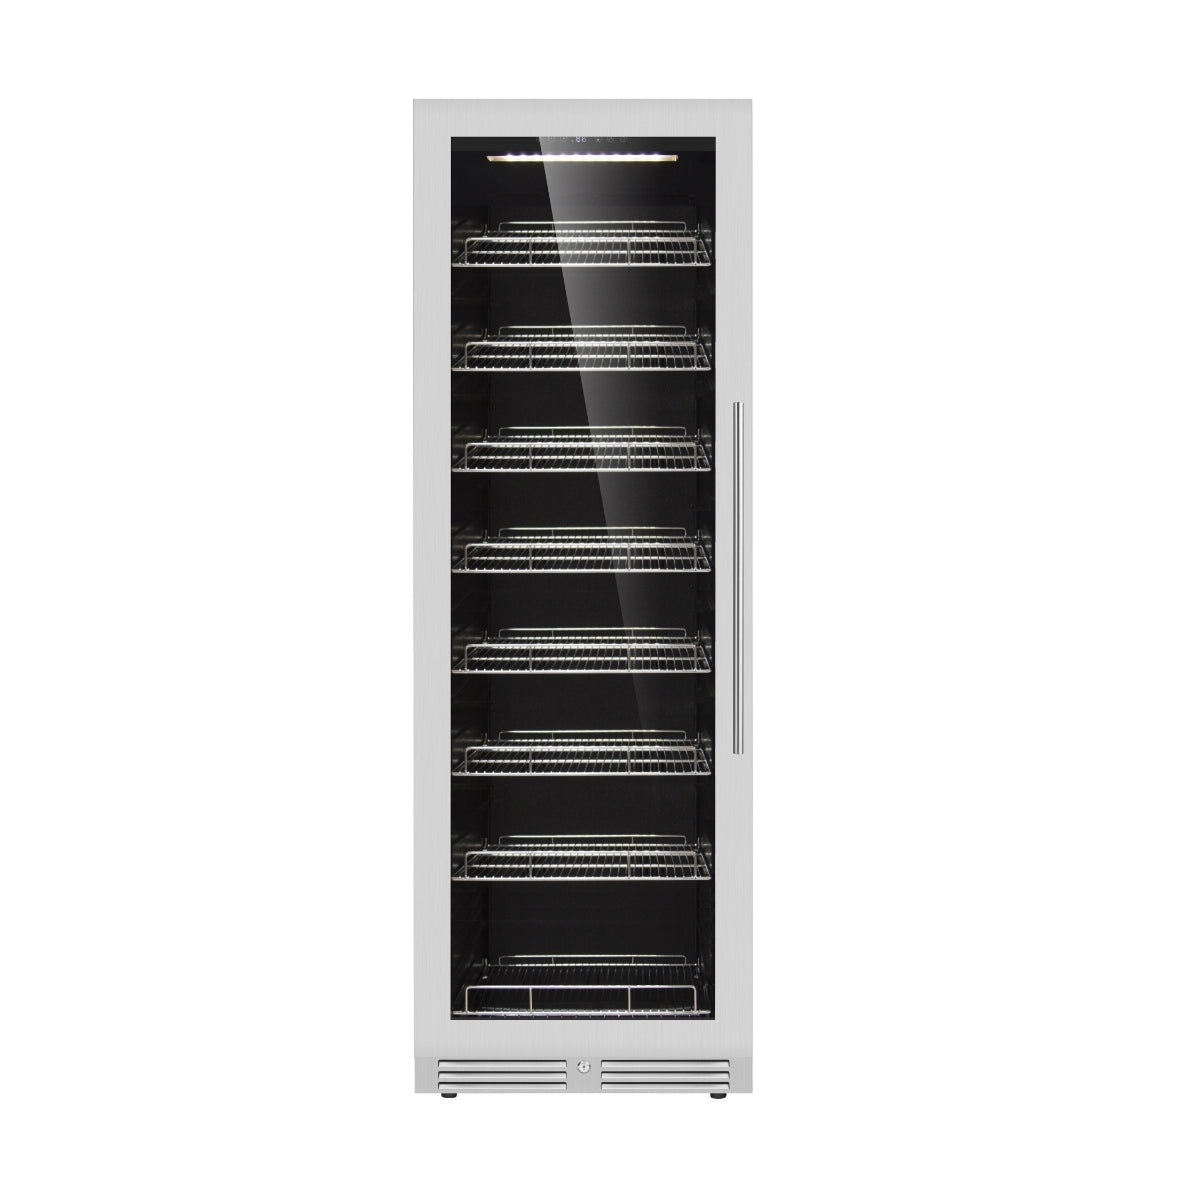 KingsBottle Large Beverage Refrigerator With Low-E Glass Door - KBU425BX